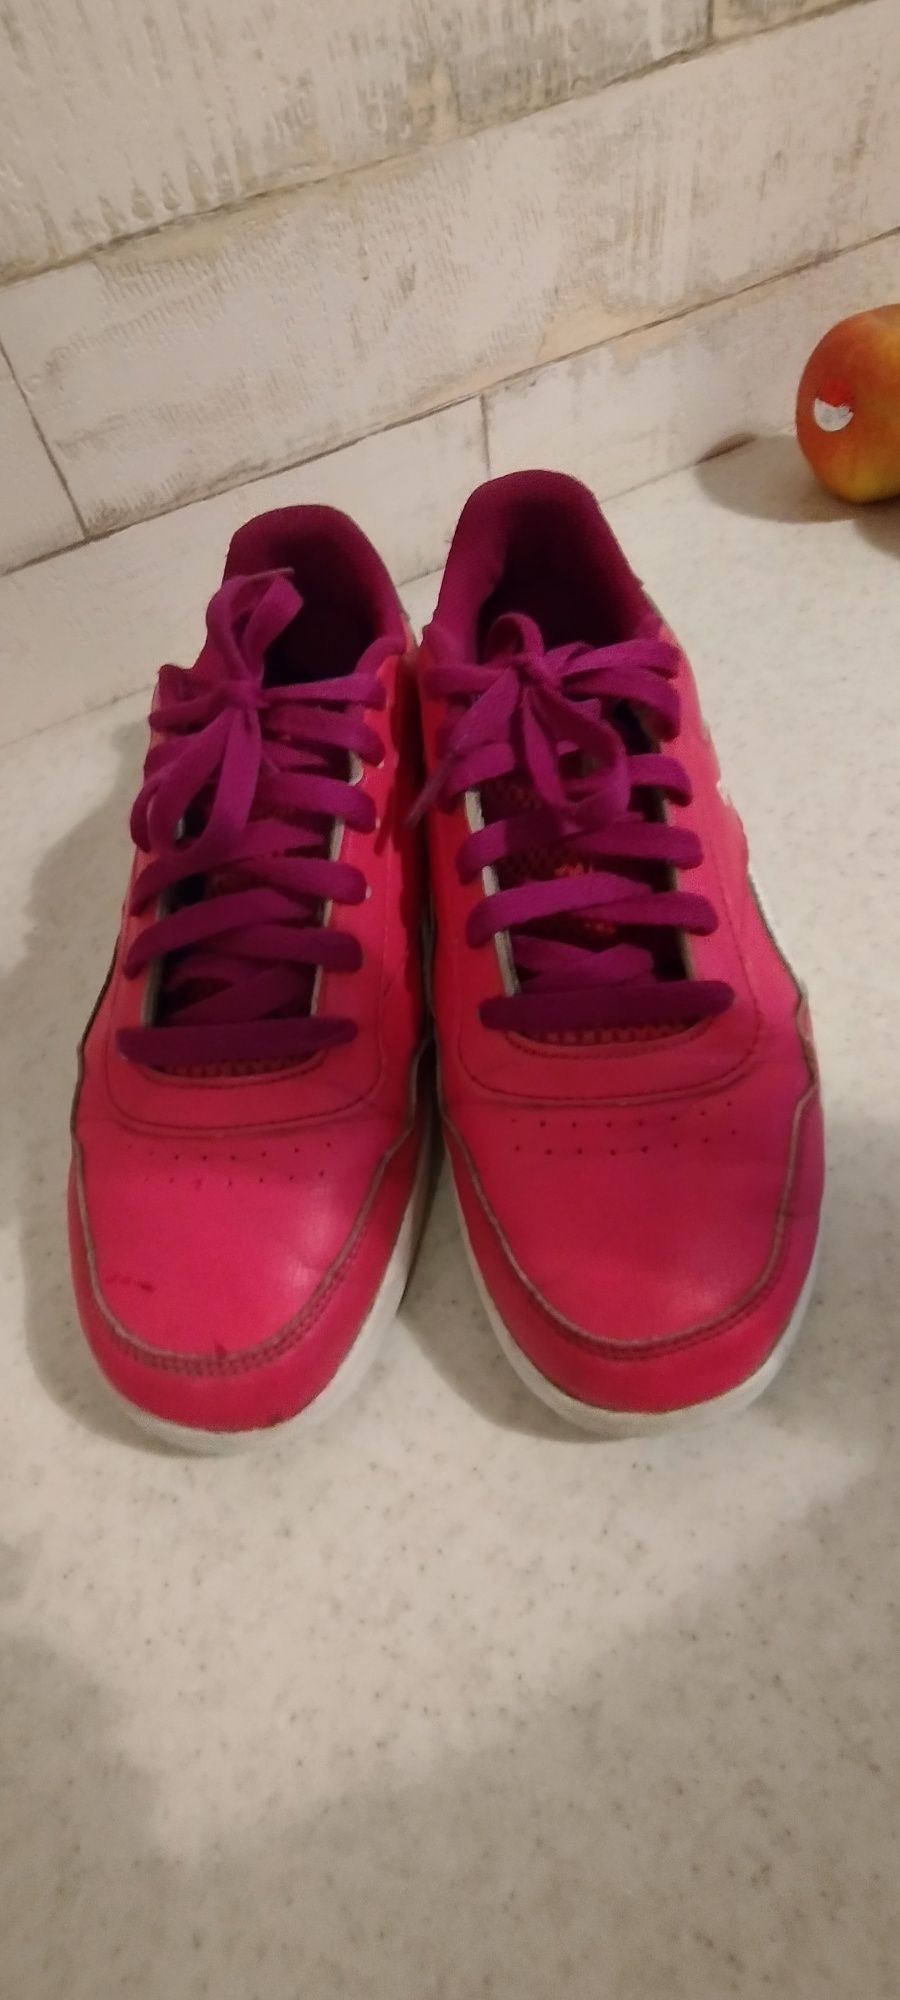 Buty Reebok różowe sneakersy 38 24,66cm